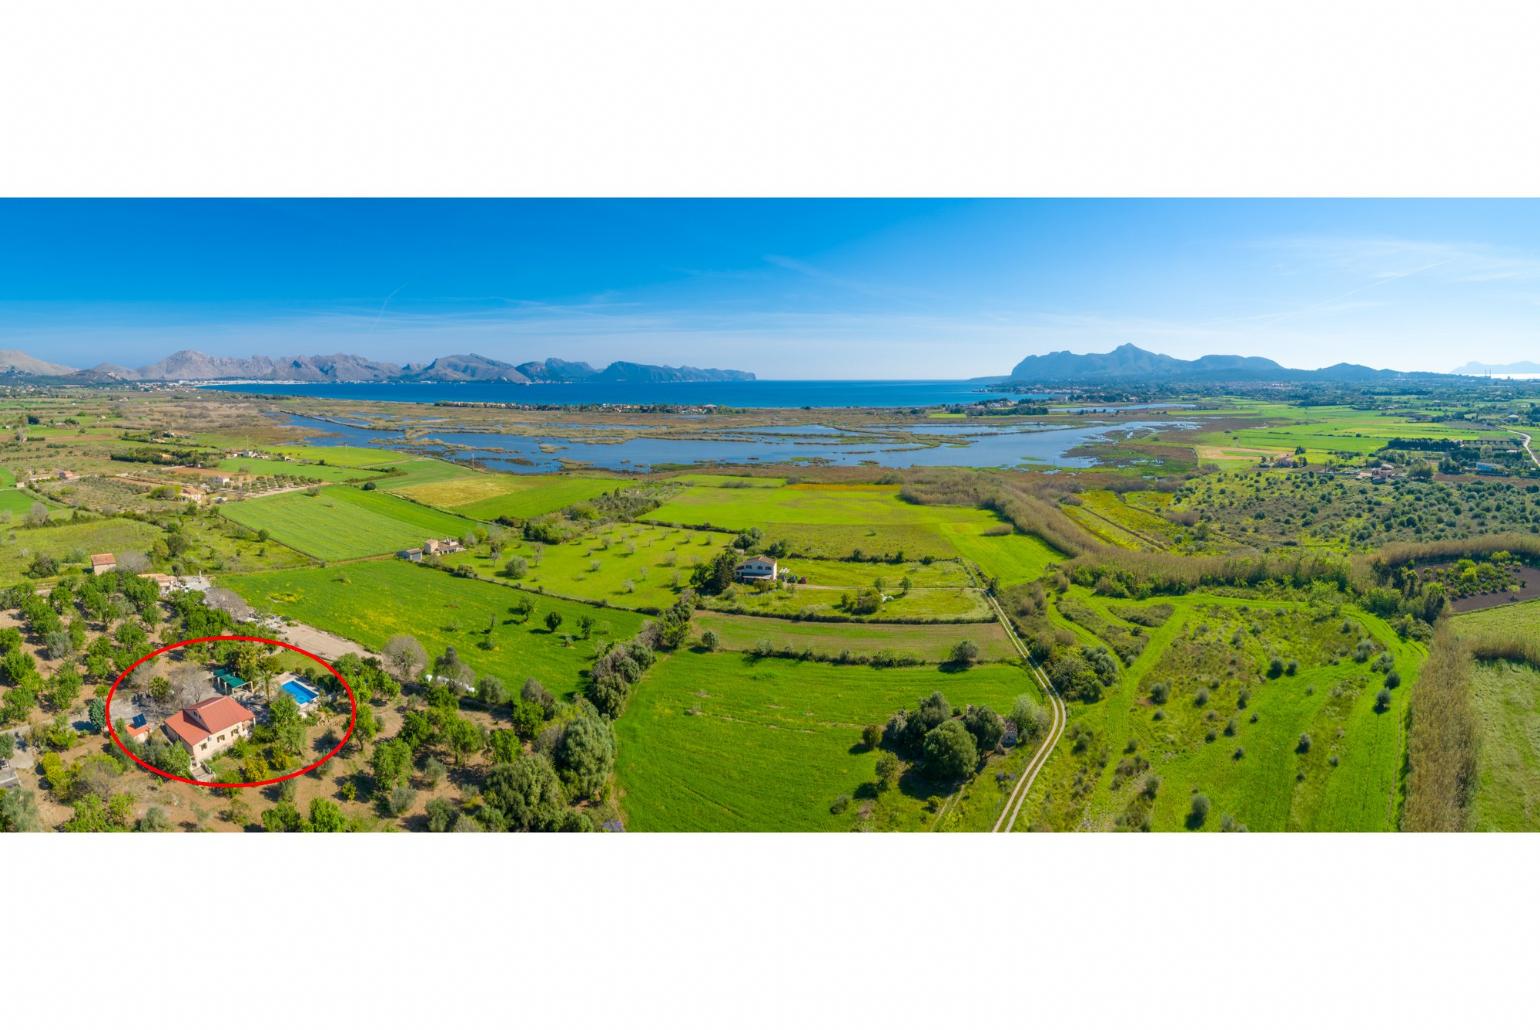 Aerial view showing location of Villa Toni Corro 